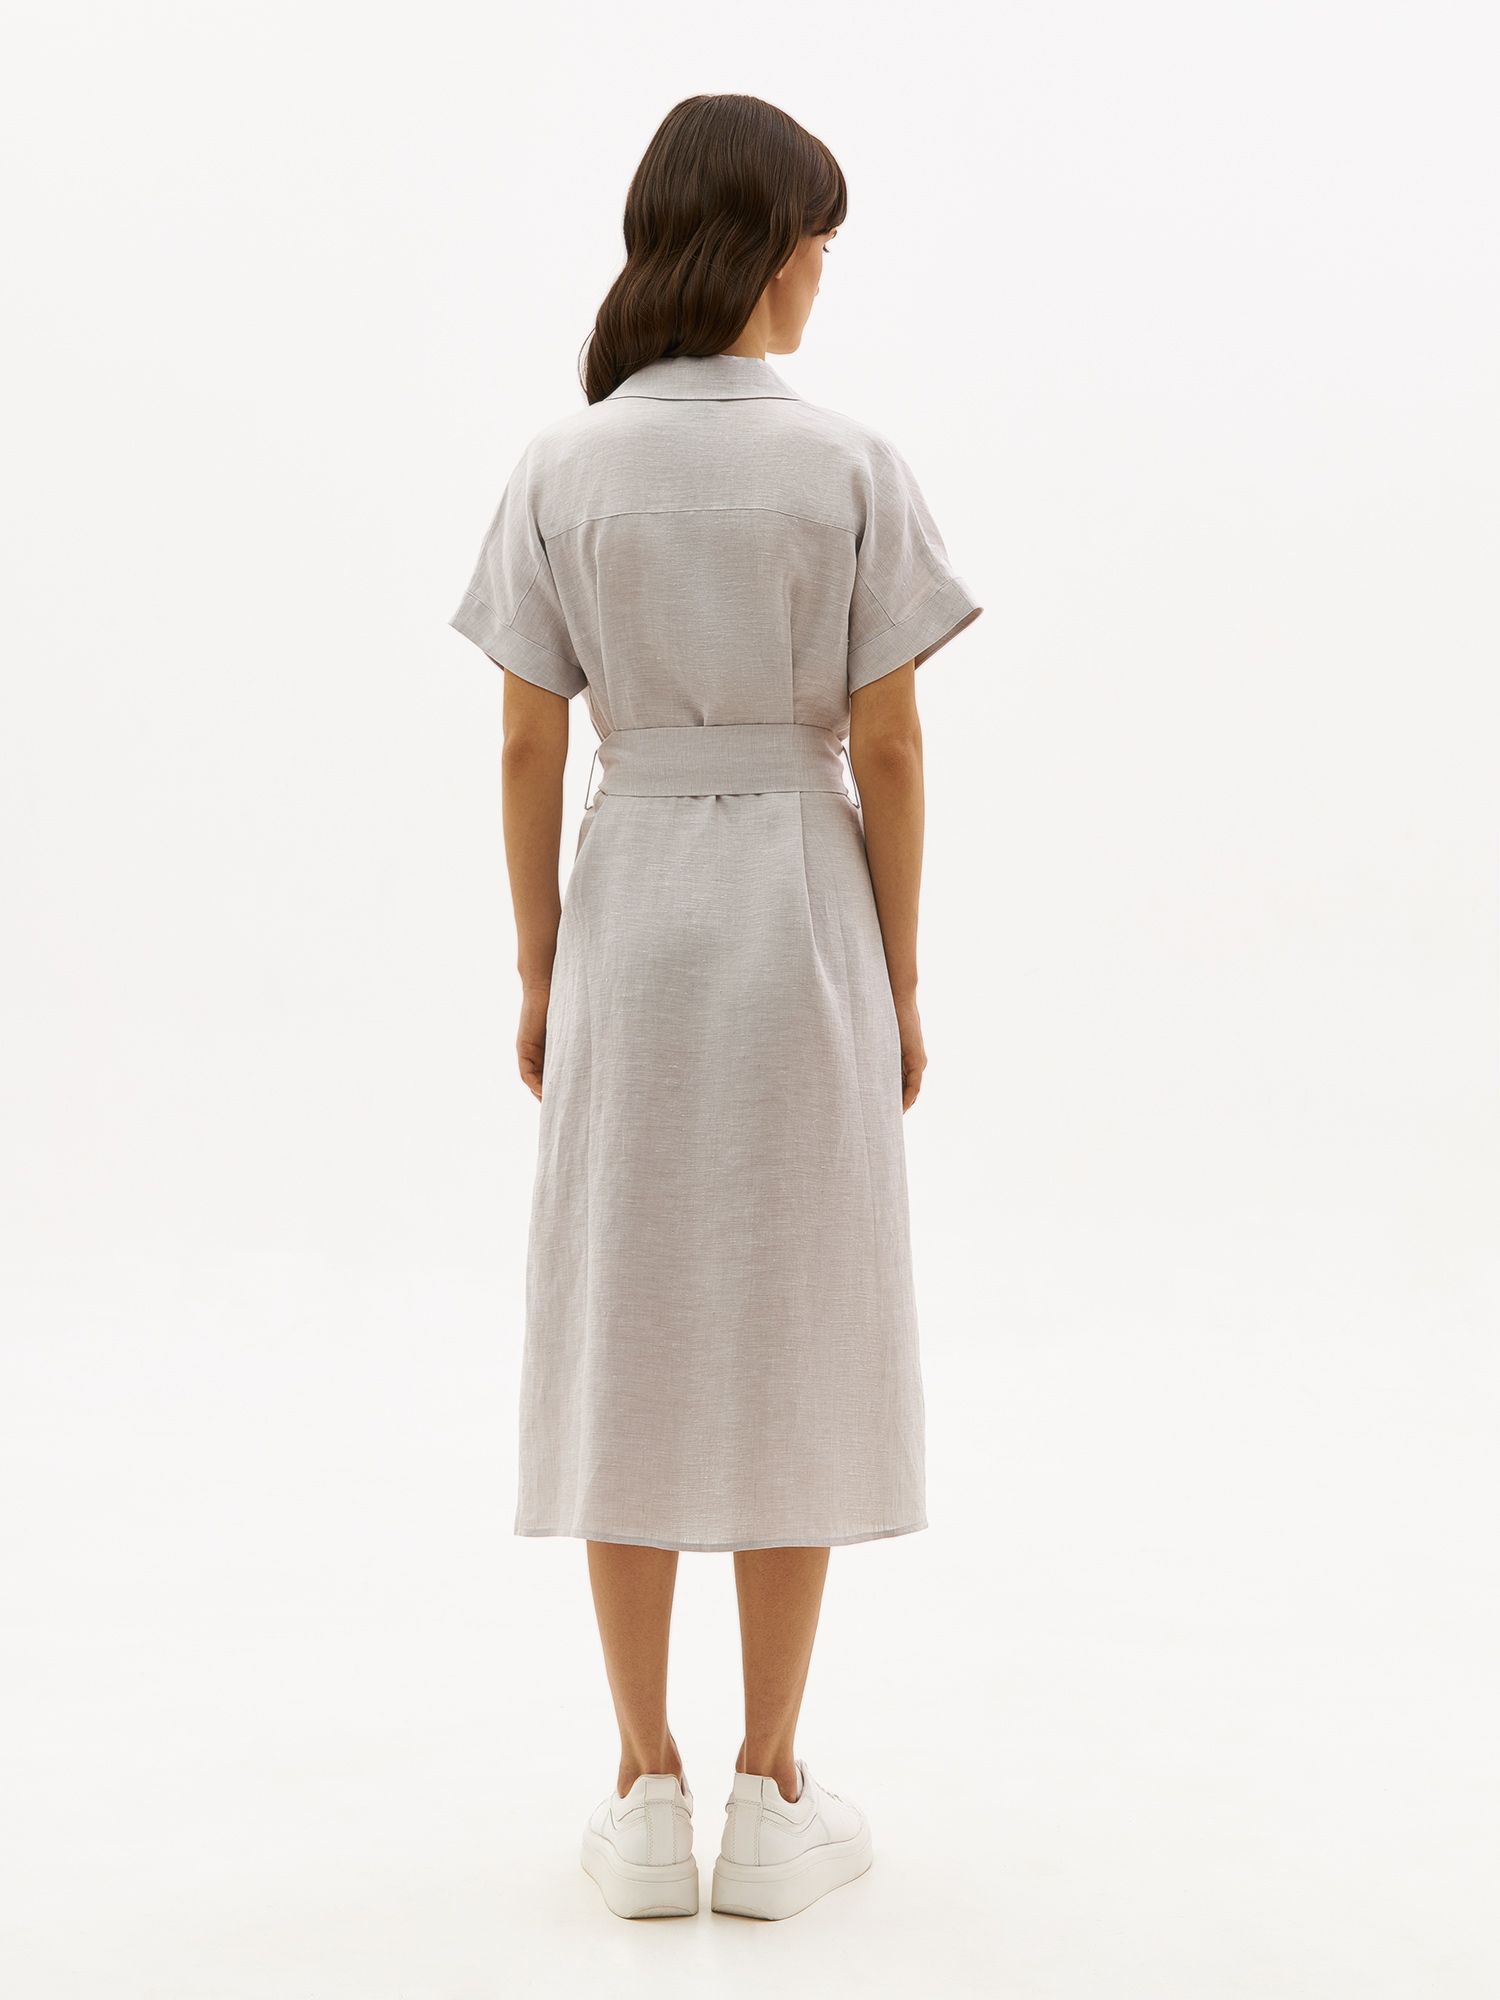 Платье в стиле сафари TENUES из экологичной конопляной ткани. Изображение 4